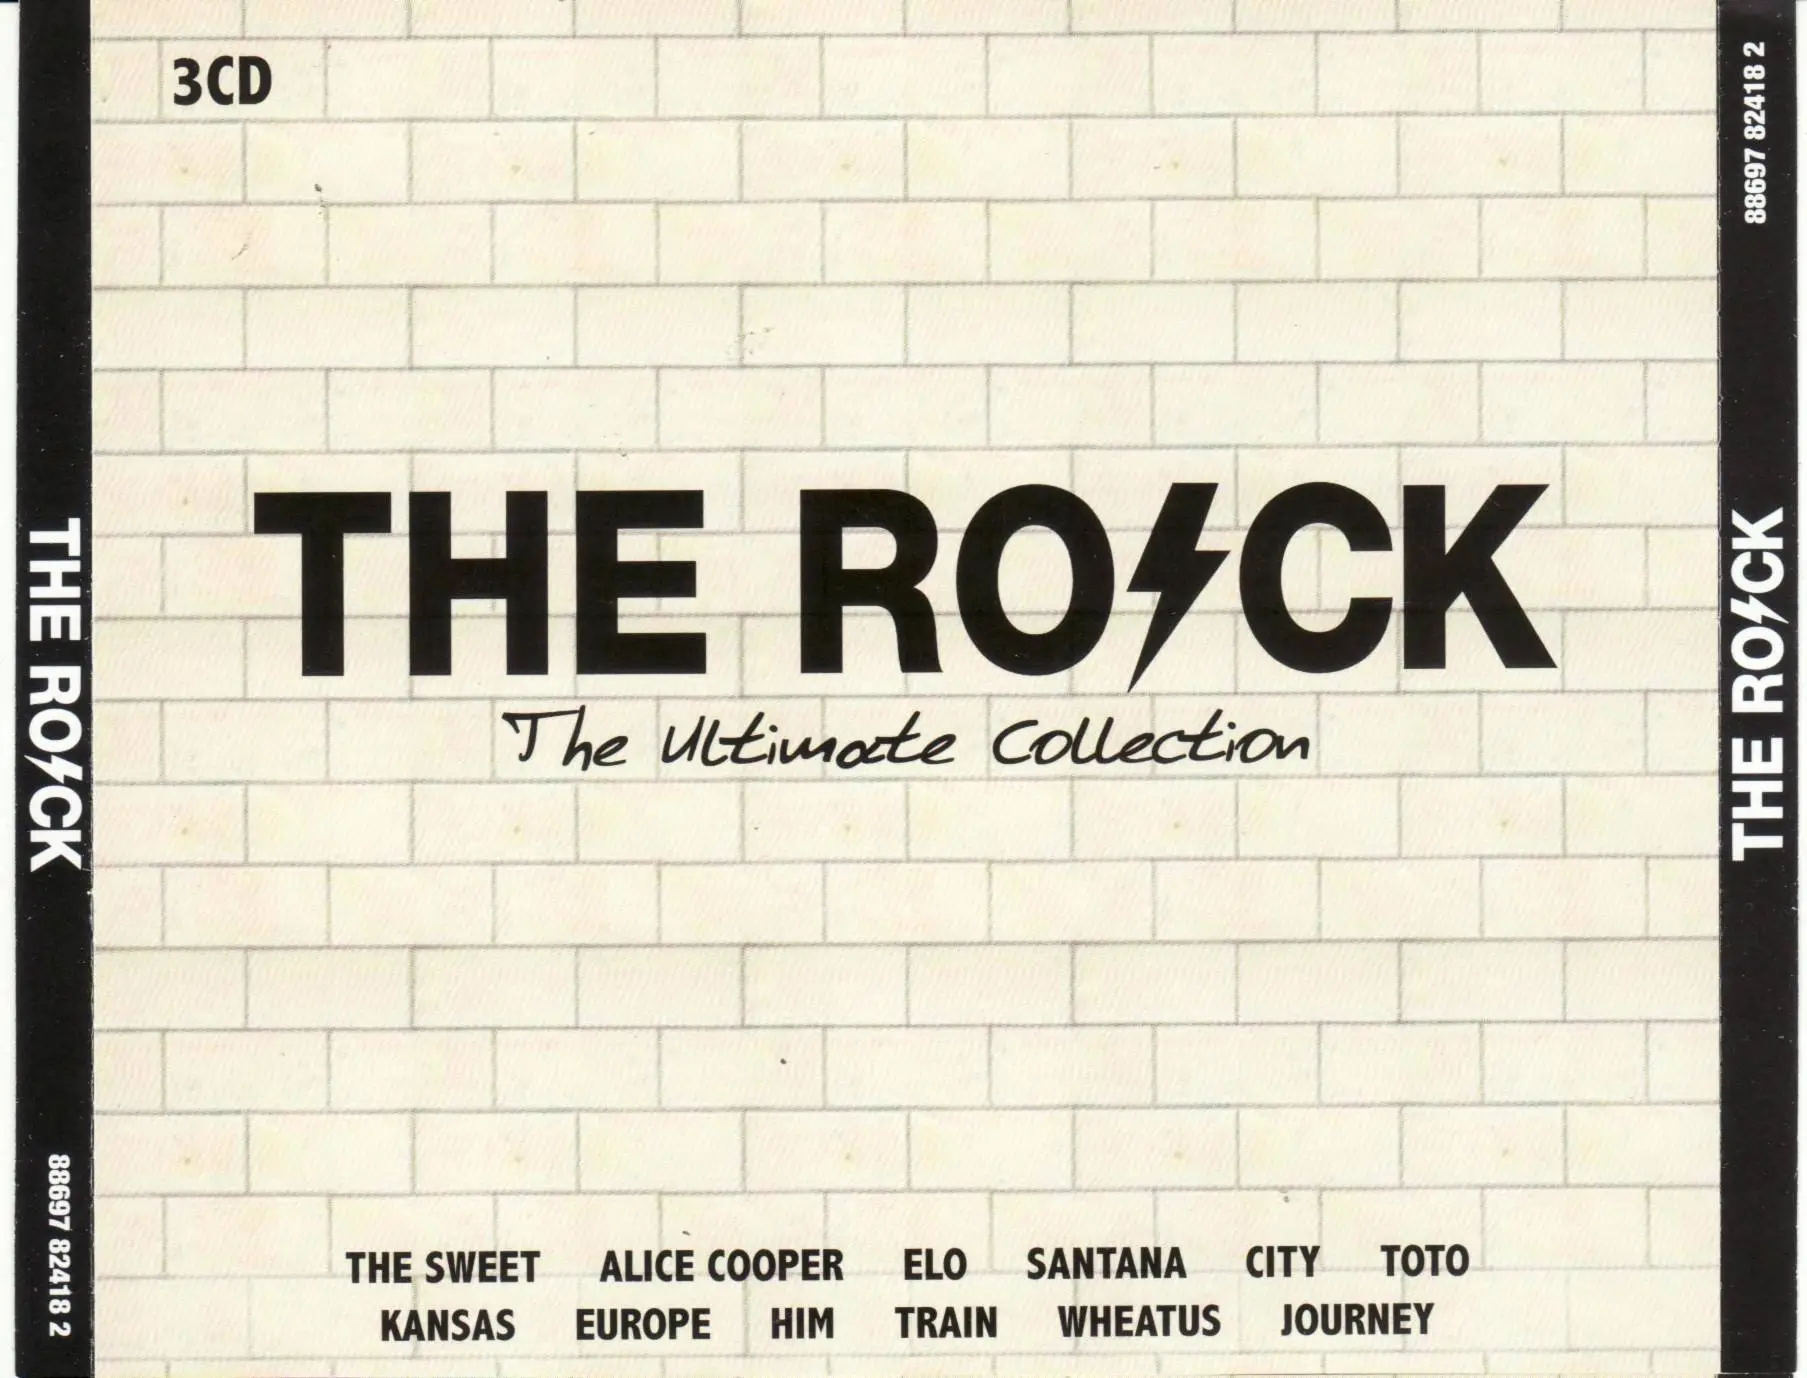 Sweet ballroom. Обложки CD Sweet ,, the Ultimate collection ( 3 CD). The Rock. The Ultimate collection 3cd. The Ballroom Blitz Sweet. Ultimate Rock. The Classics обложка.